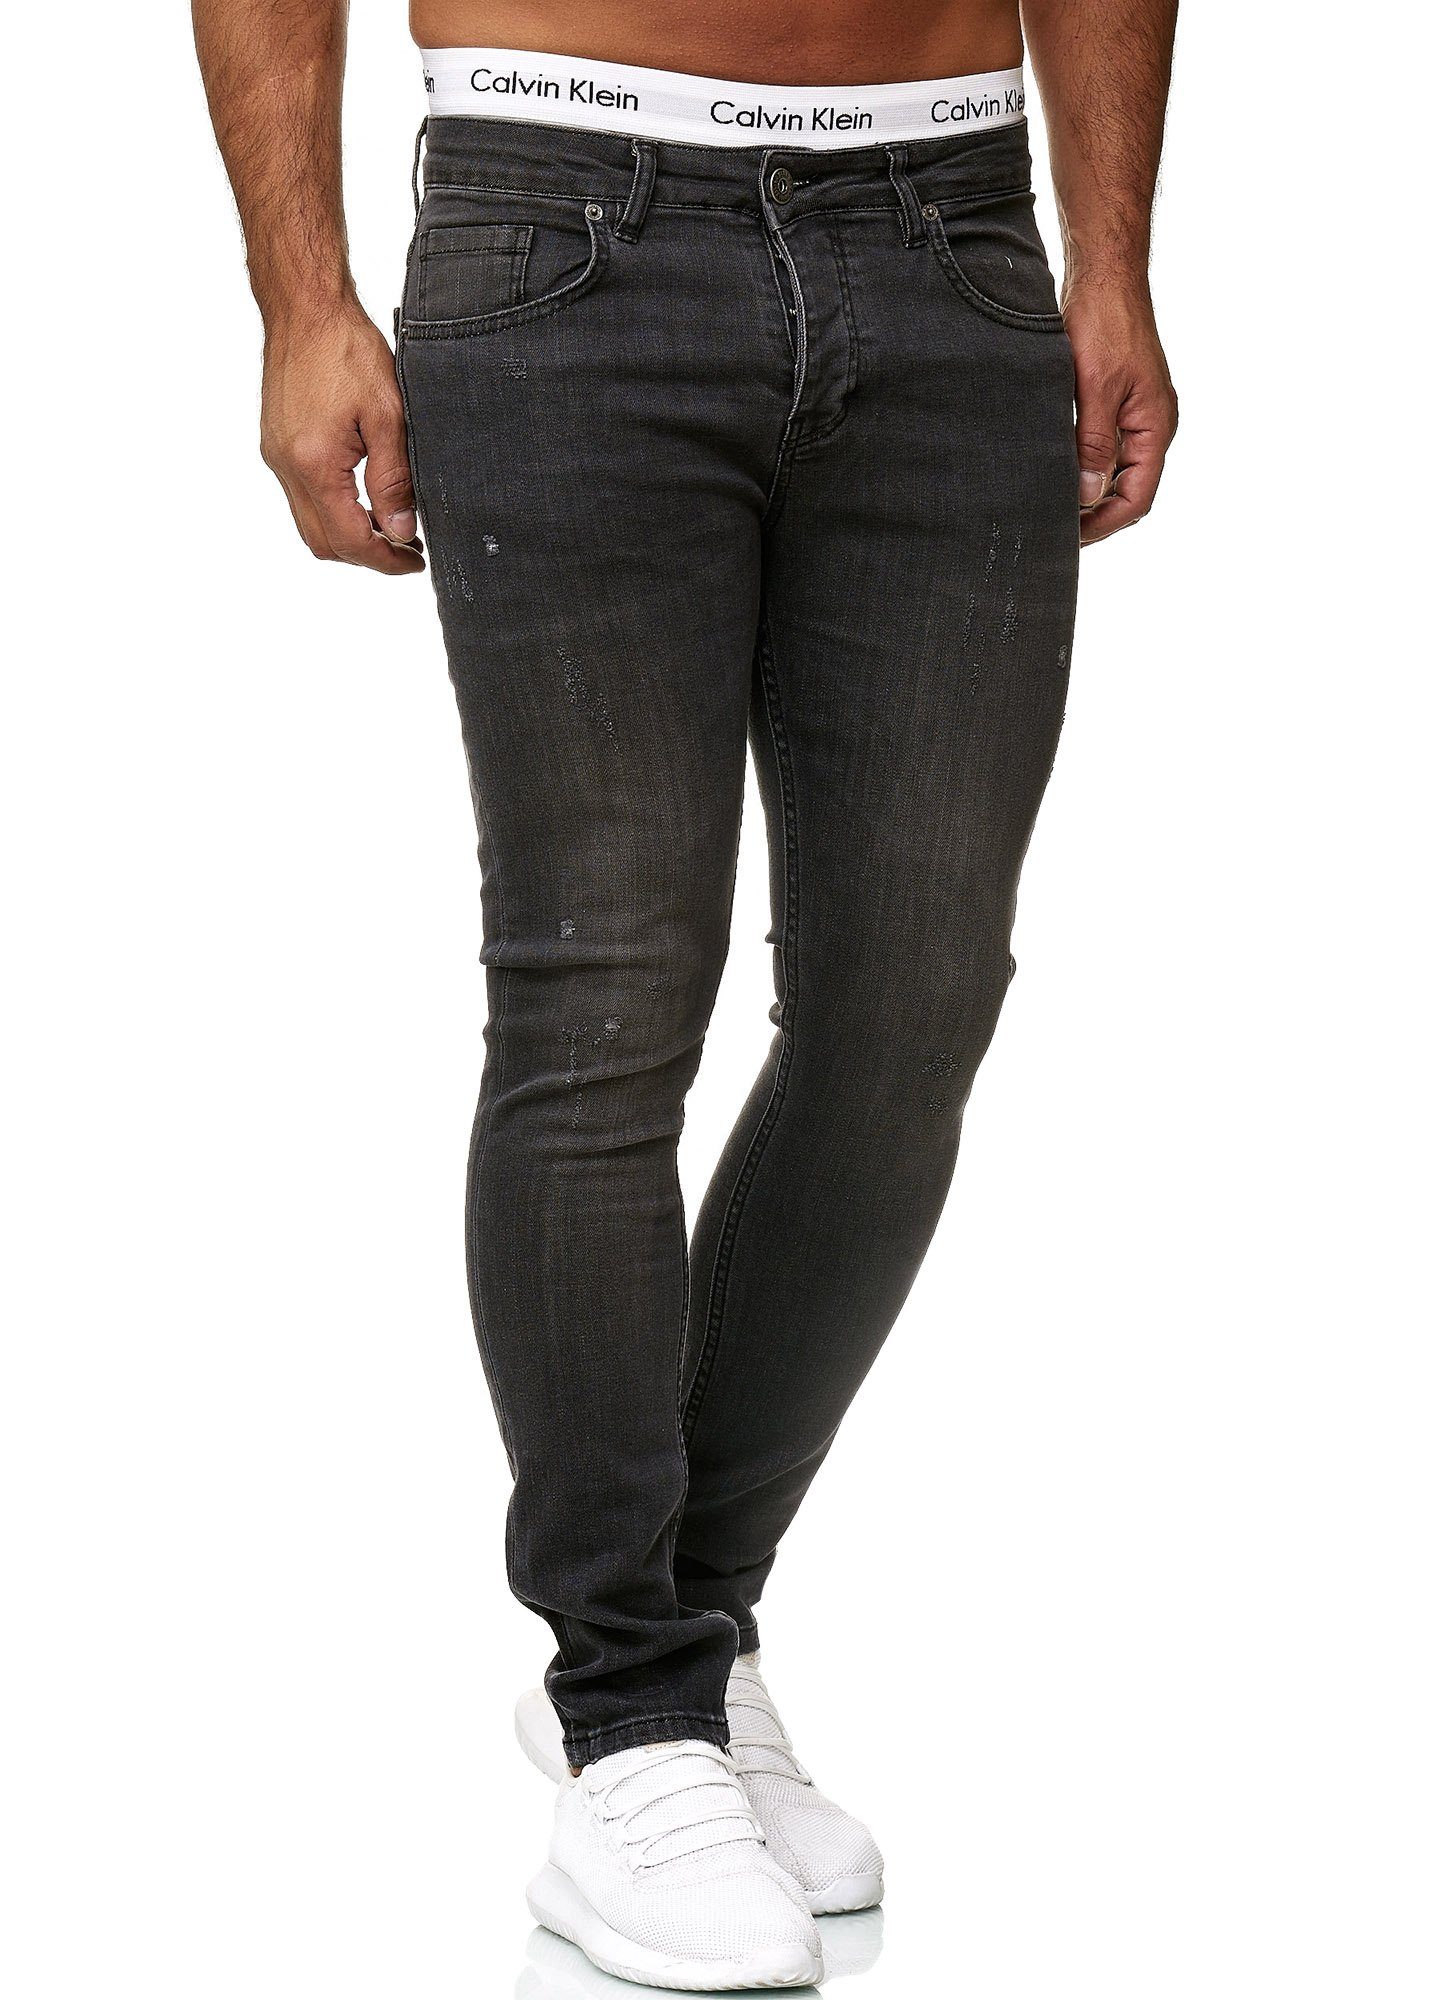 605 Grey Skinny-fit-Jeans Skinny Code47 Code47 Designer Hose Herren Fit Basic Deep Used Jeanshose Jeans Regular